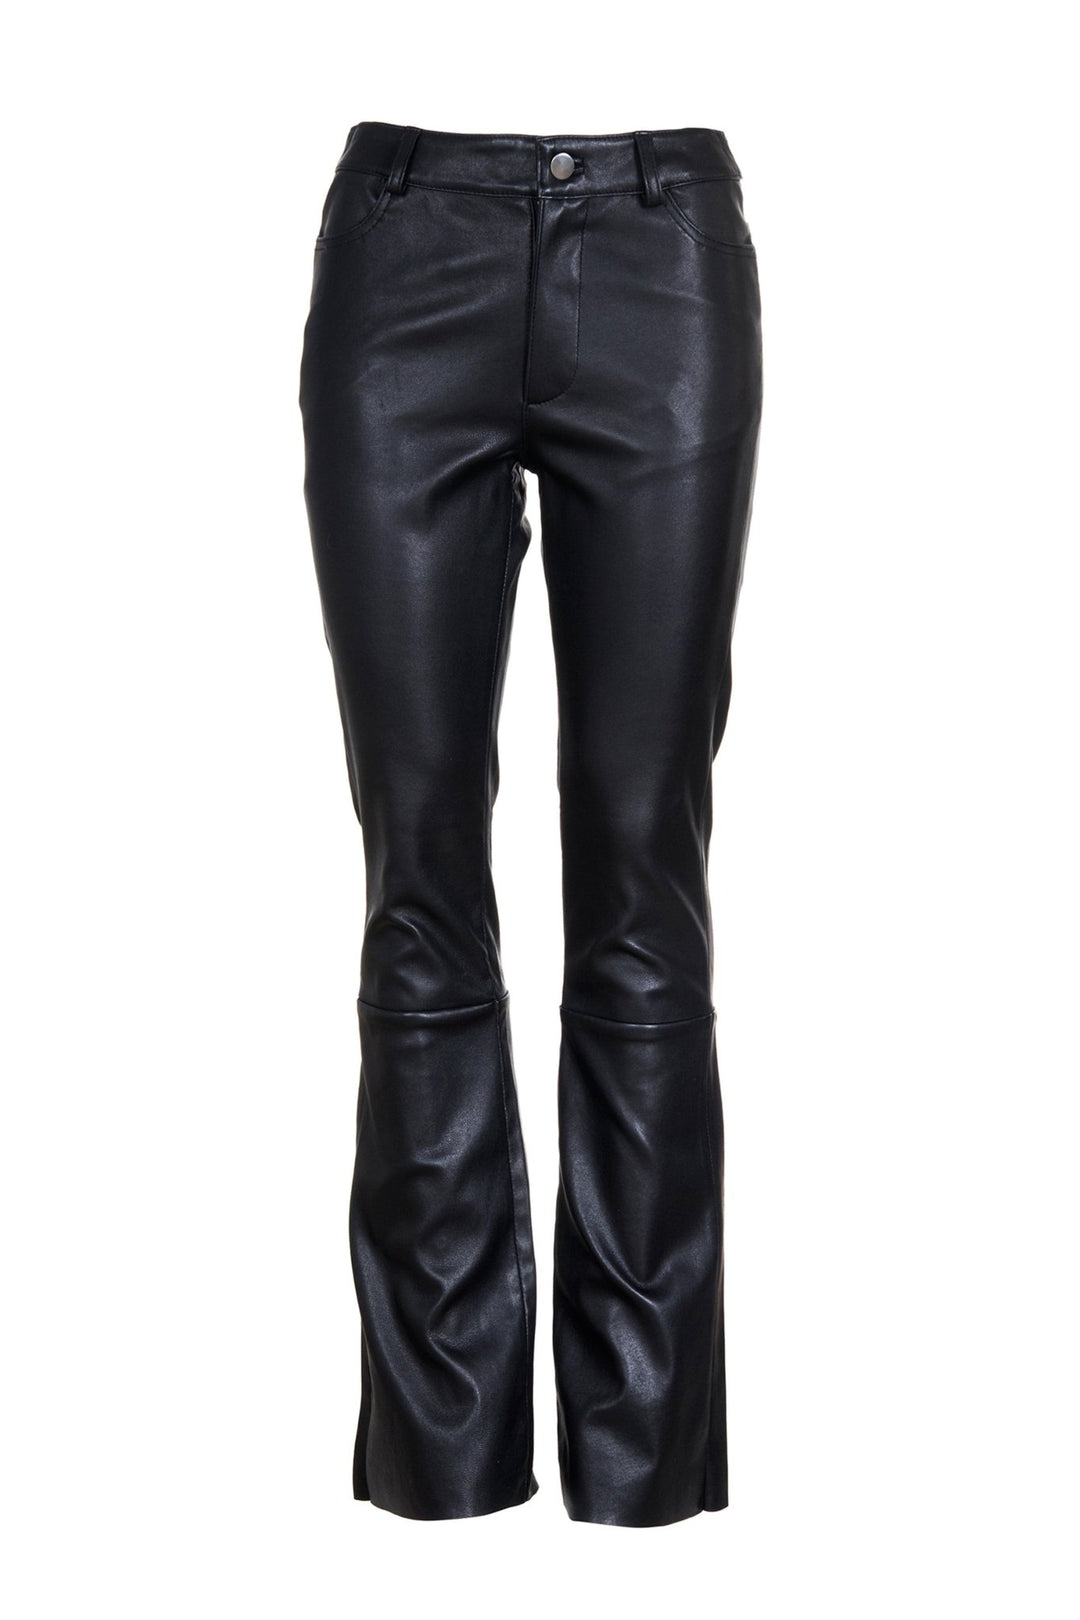 Harmony Trouser Black | Bukser | Smuk - Dameklær på nett